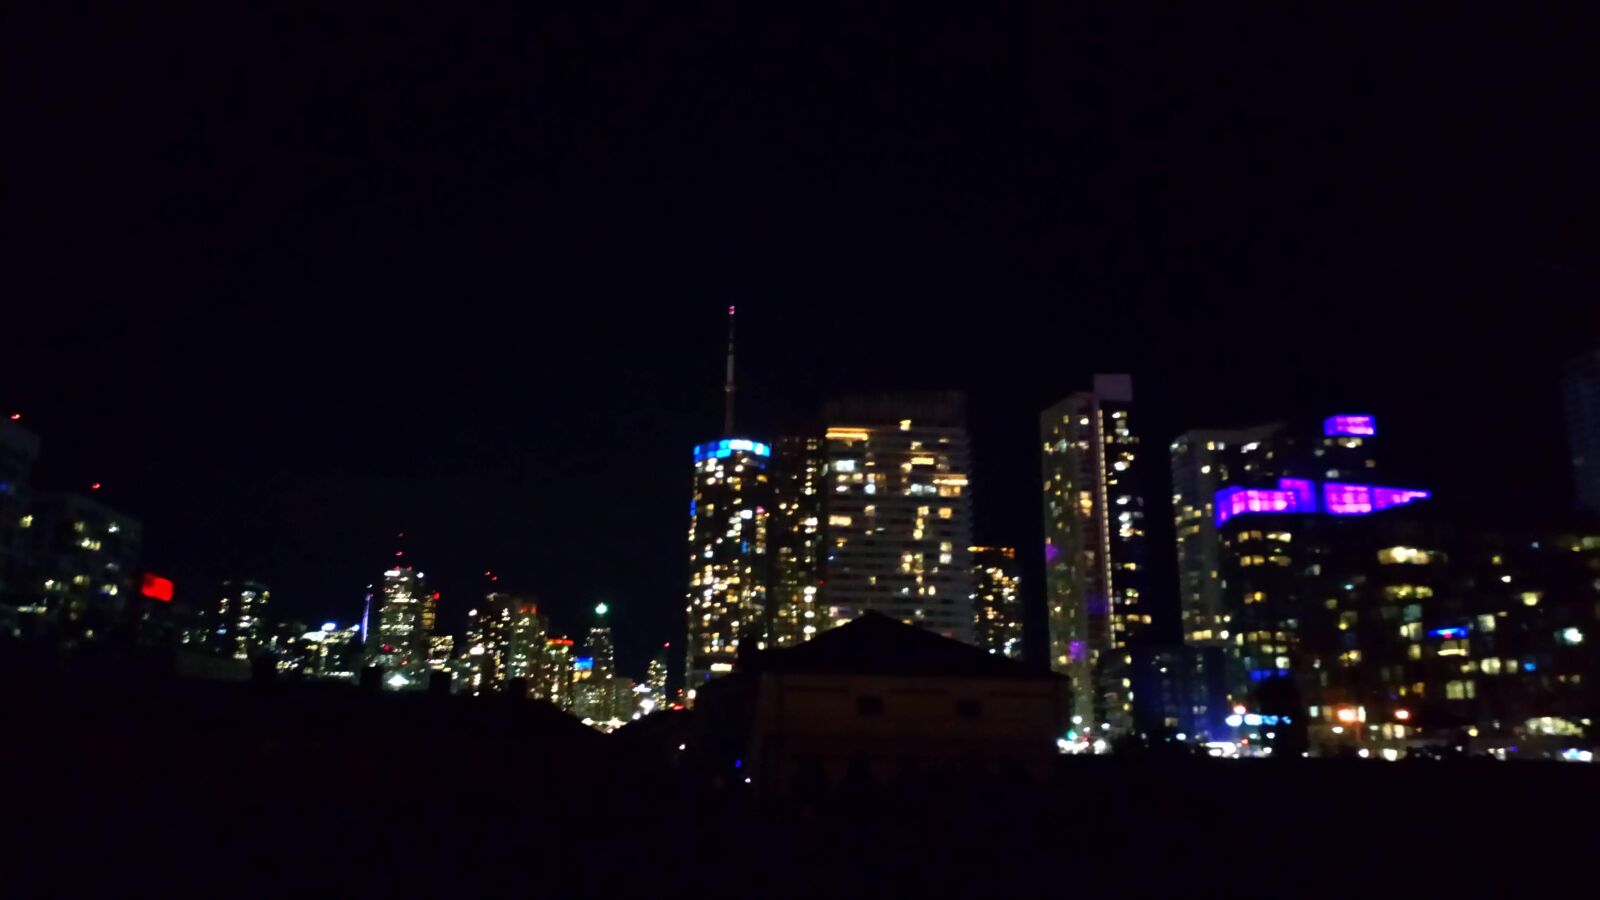 Sony Xperia L1 sample photo. Toronto, city, cityscape photography